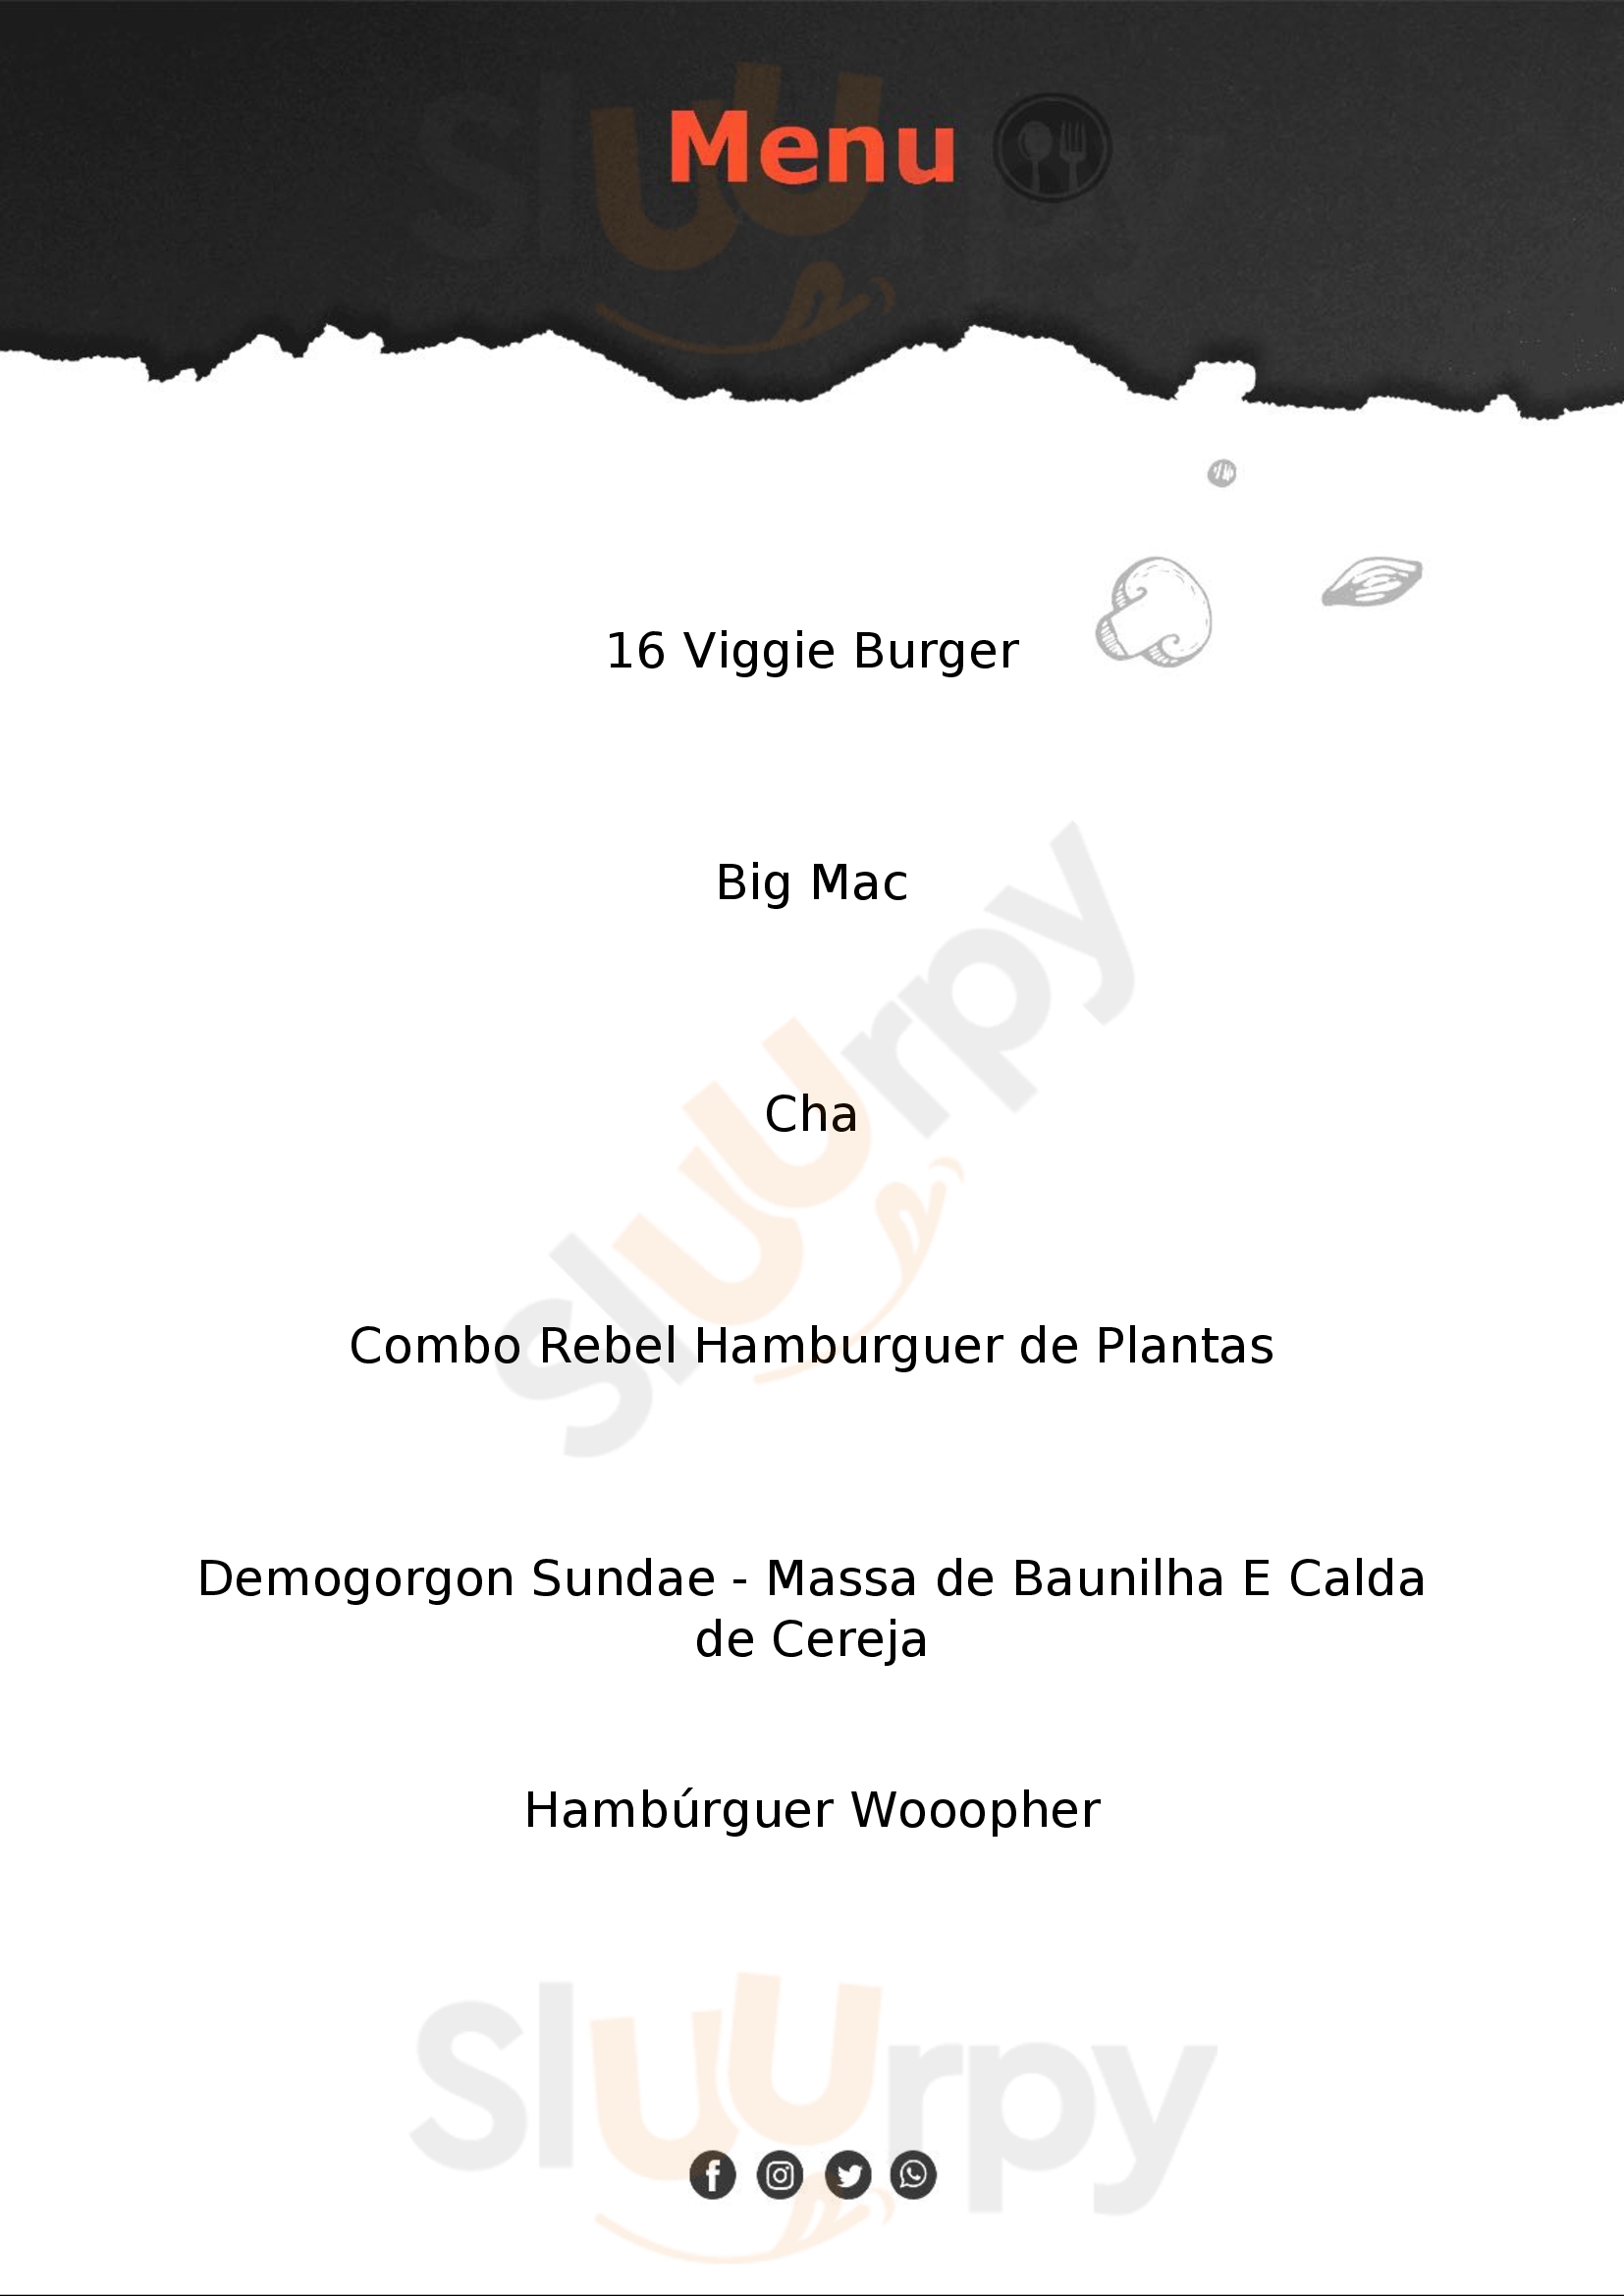 Burger King São Paulo Menu - 1